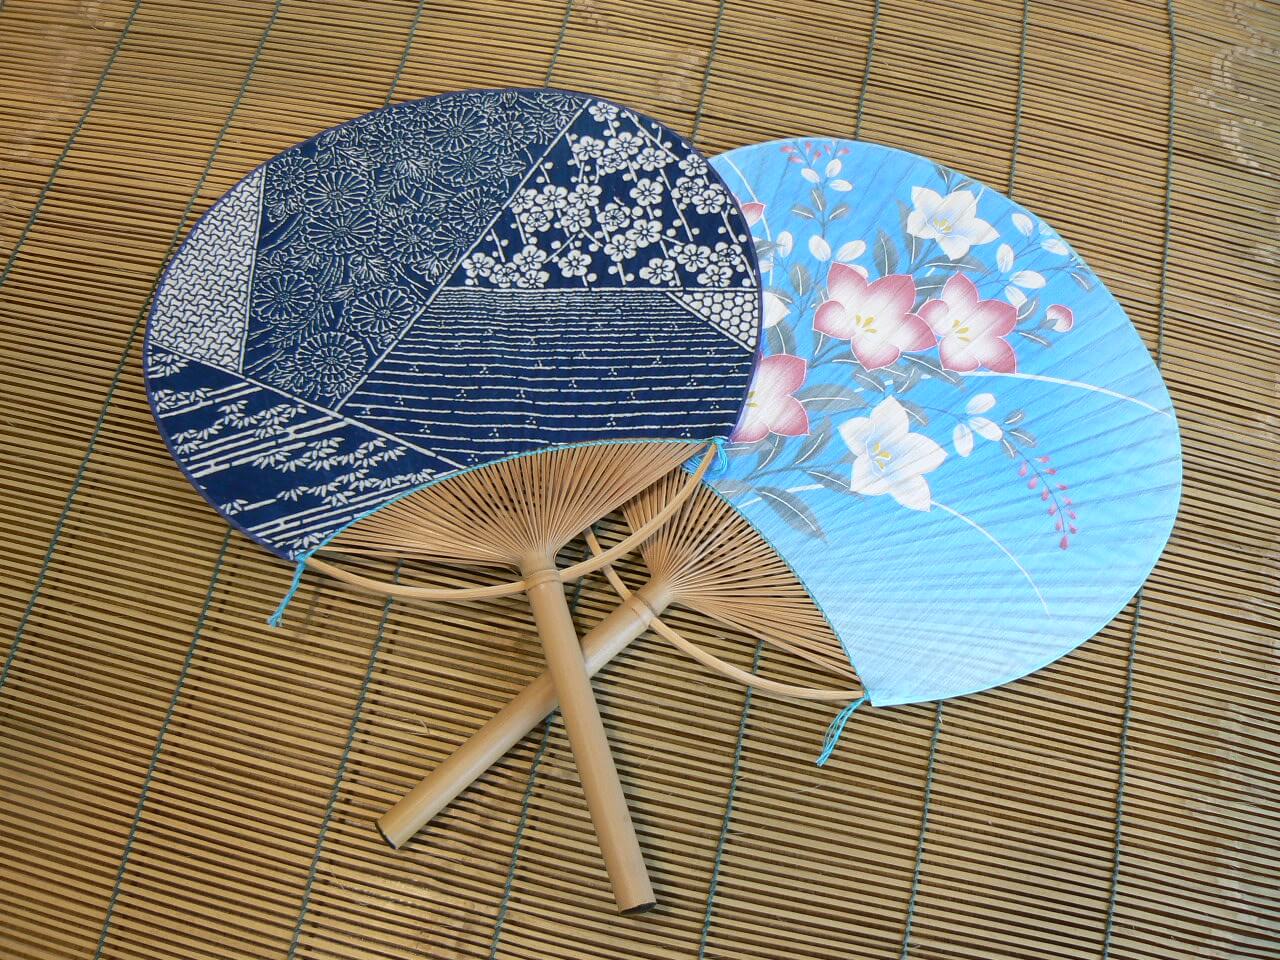 An uchiwa fan, used in Japan